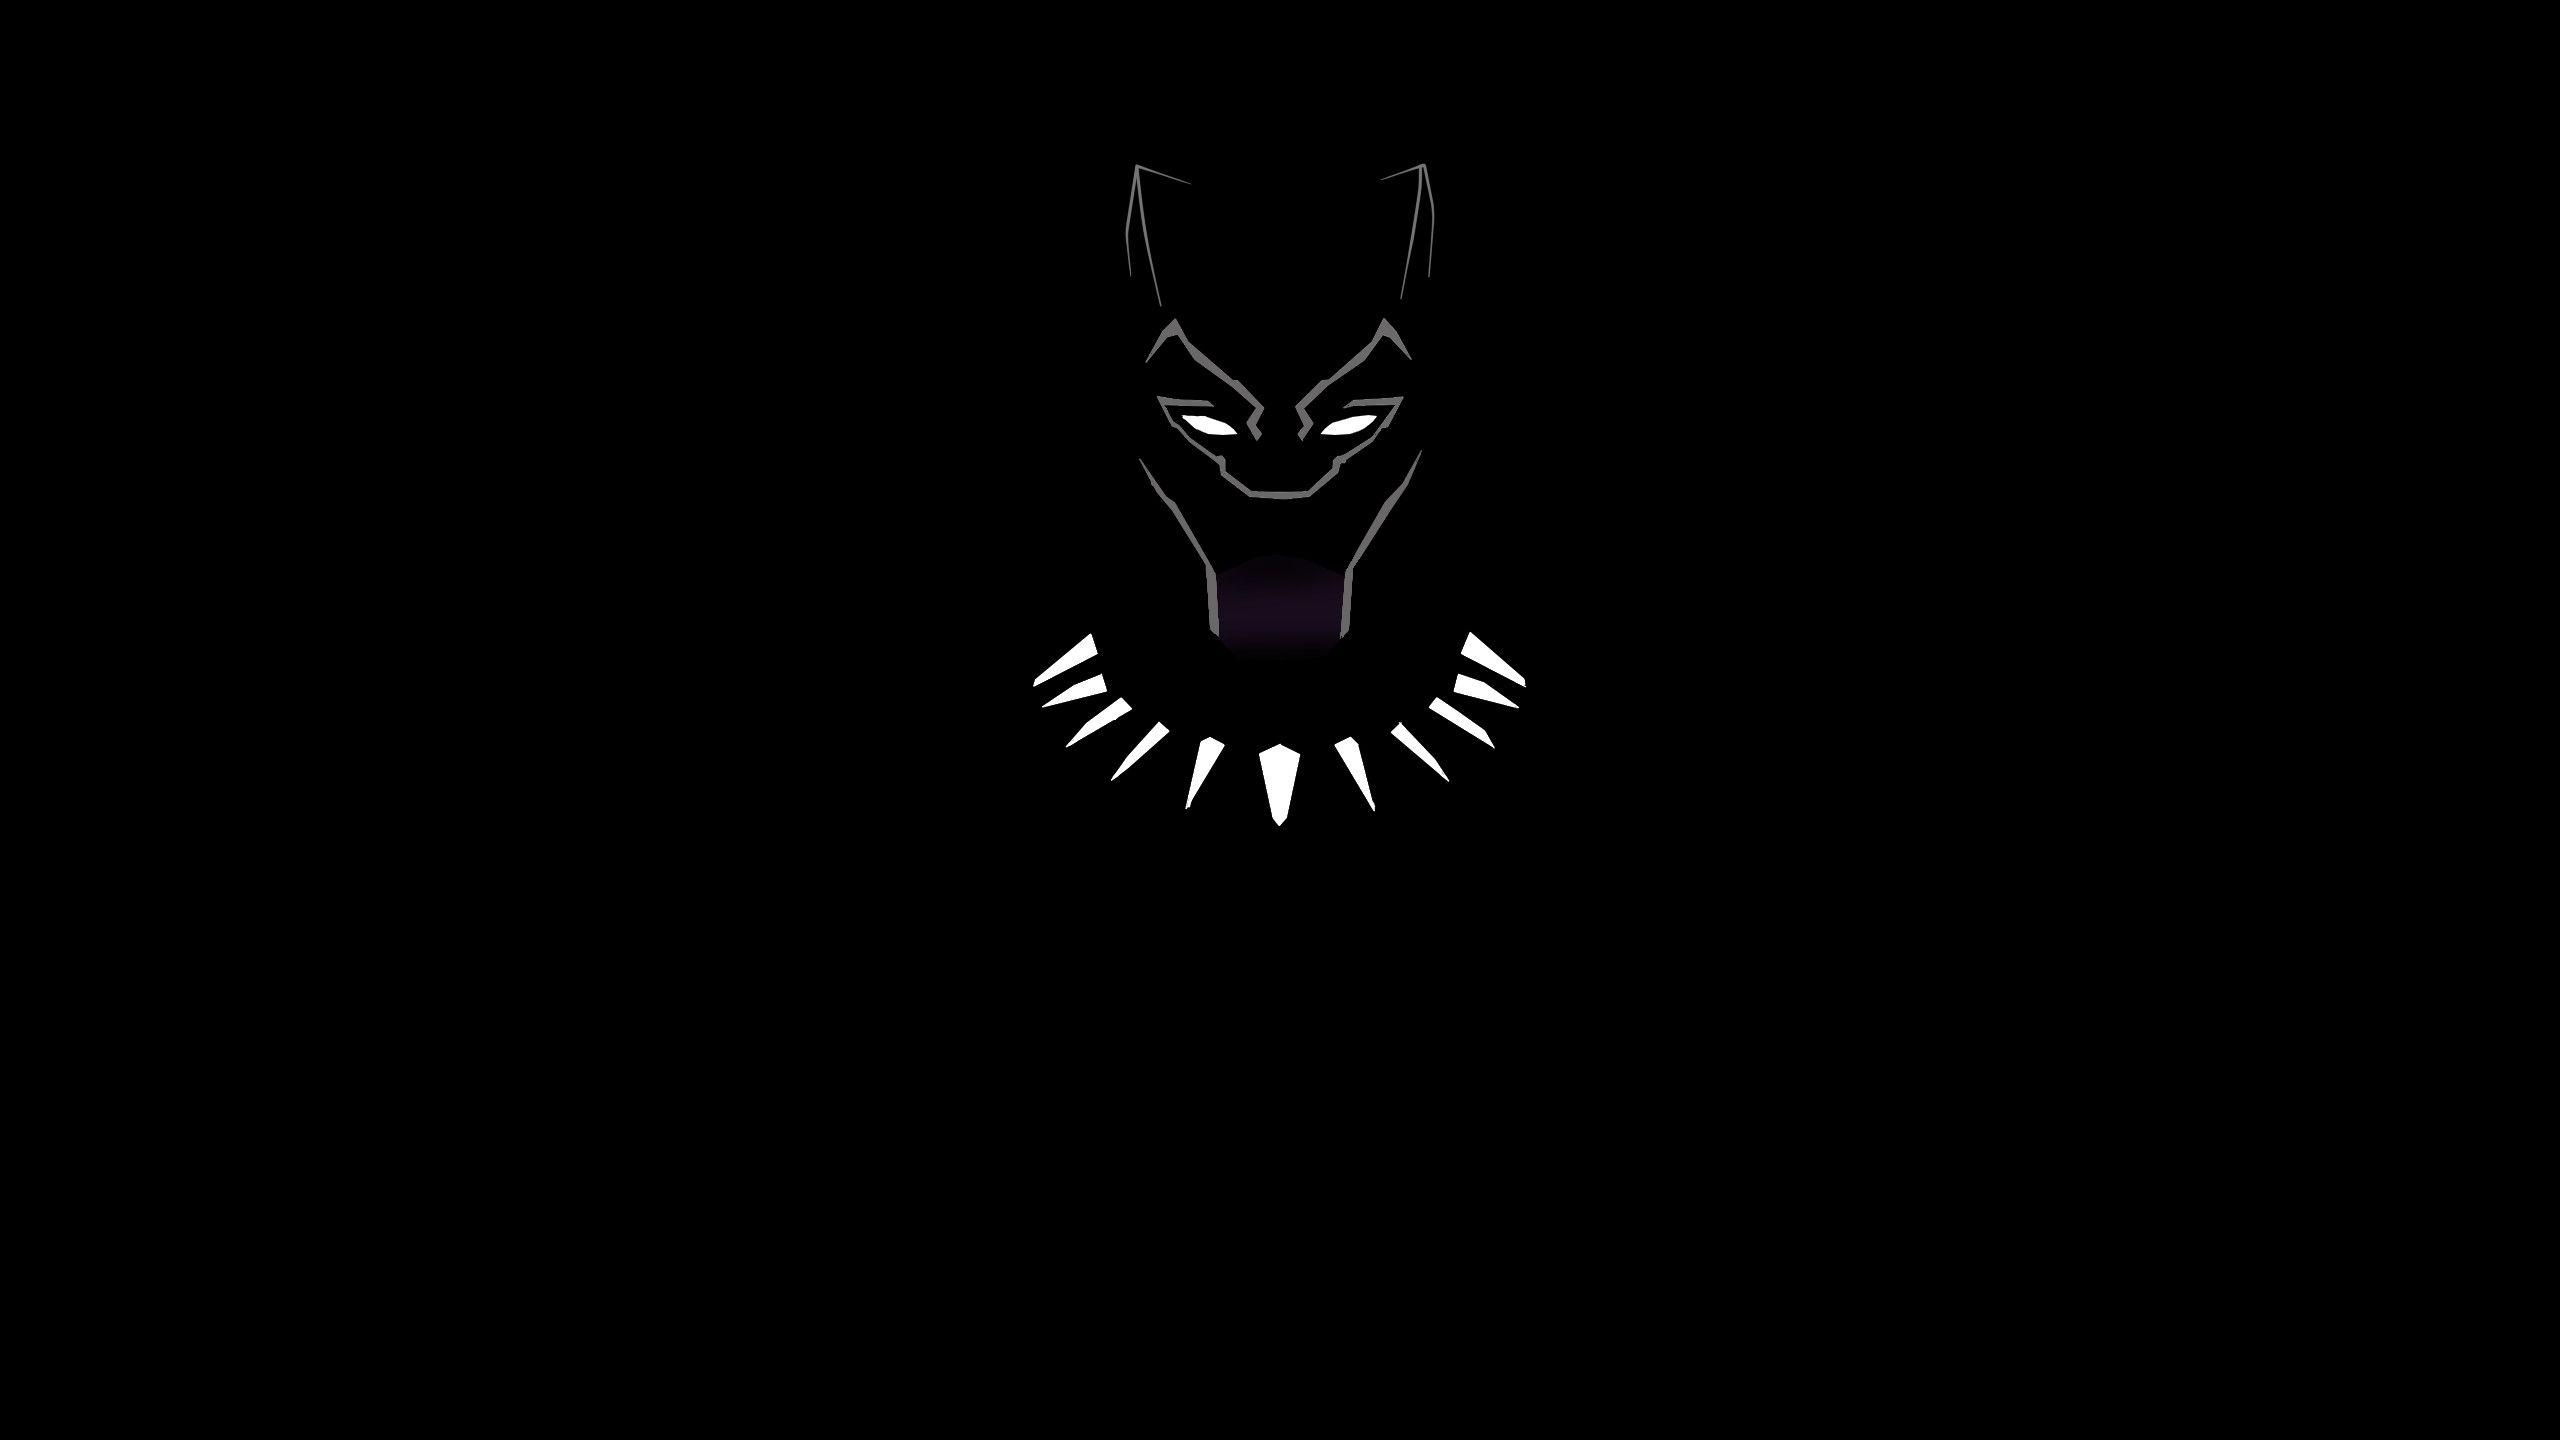 Black Panther 4K Ultra HD Dark Wallpapers - Top Free Black Panther 4K